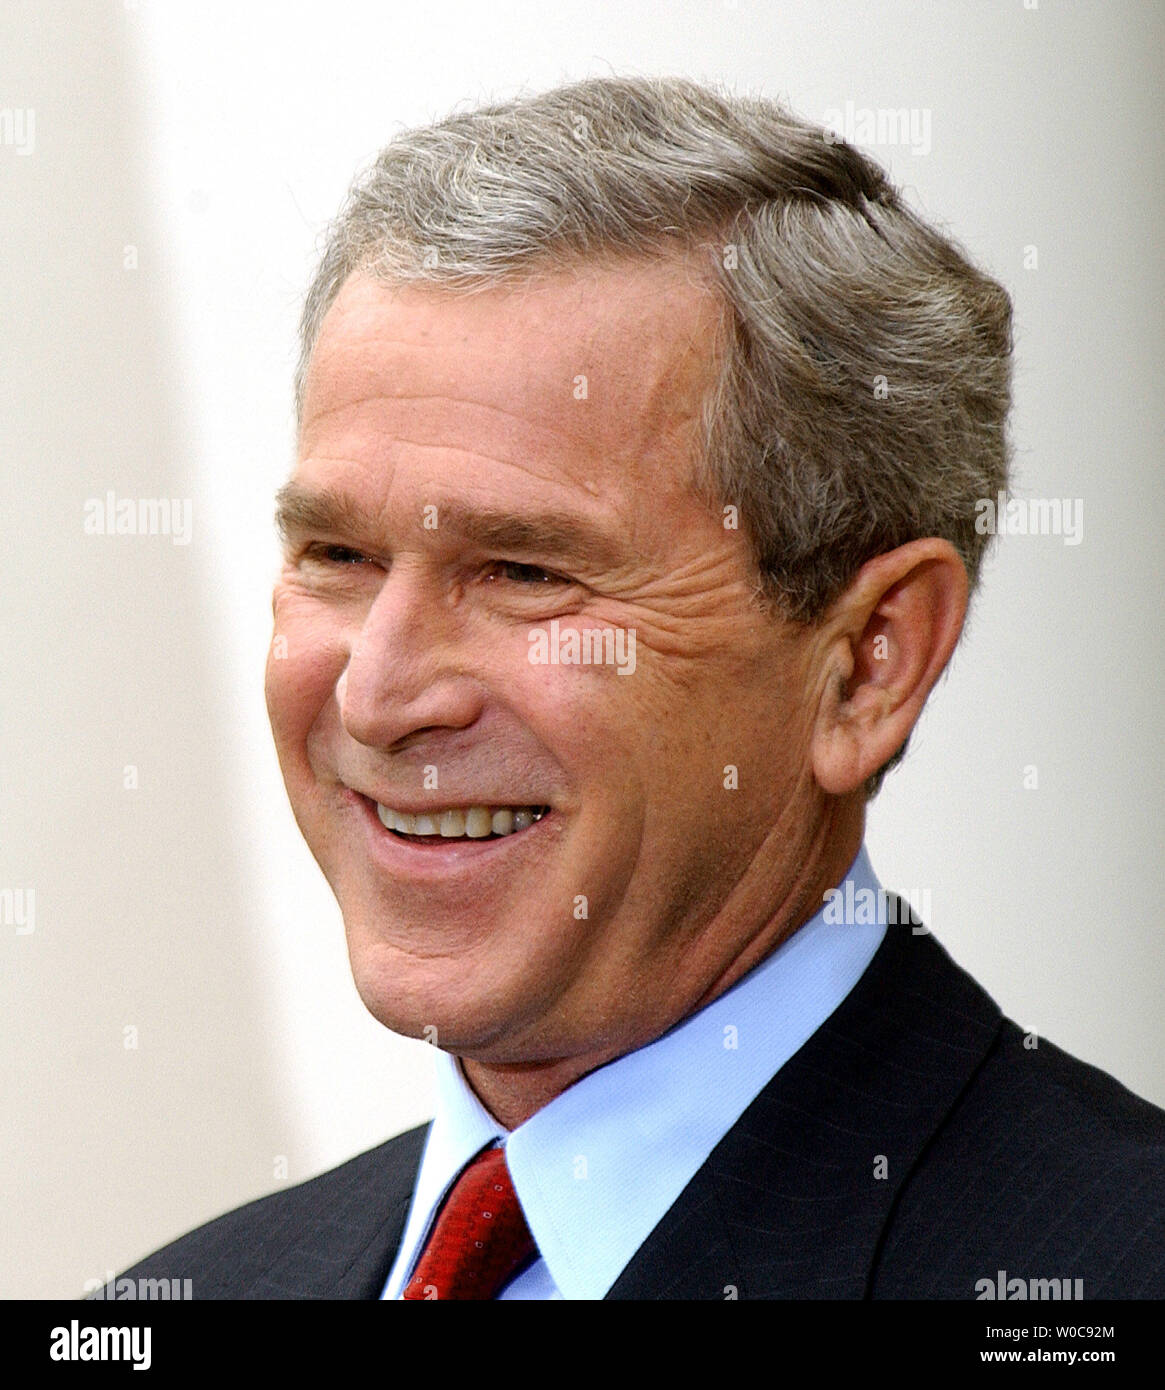 Präsident Bush lacht, als er Fragen Antworten von den Medien während einer Pressekonferenz am 28. Oktober 2003, im Rosengarten des Weißen Hauses. Bush die Schuld an der jüngsten Anschläge in Irak auf Baathistischen und ausländische Terroristen, aber sagte, daß Fortschritte gemacht werden. (UPI/Roger L. Wollenberg) Stockfoto